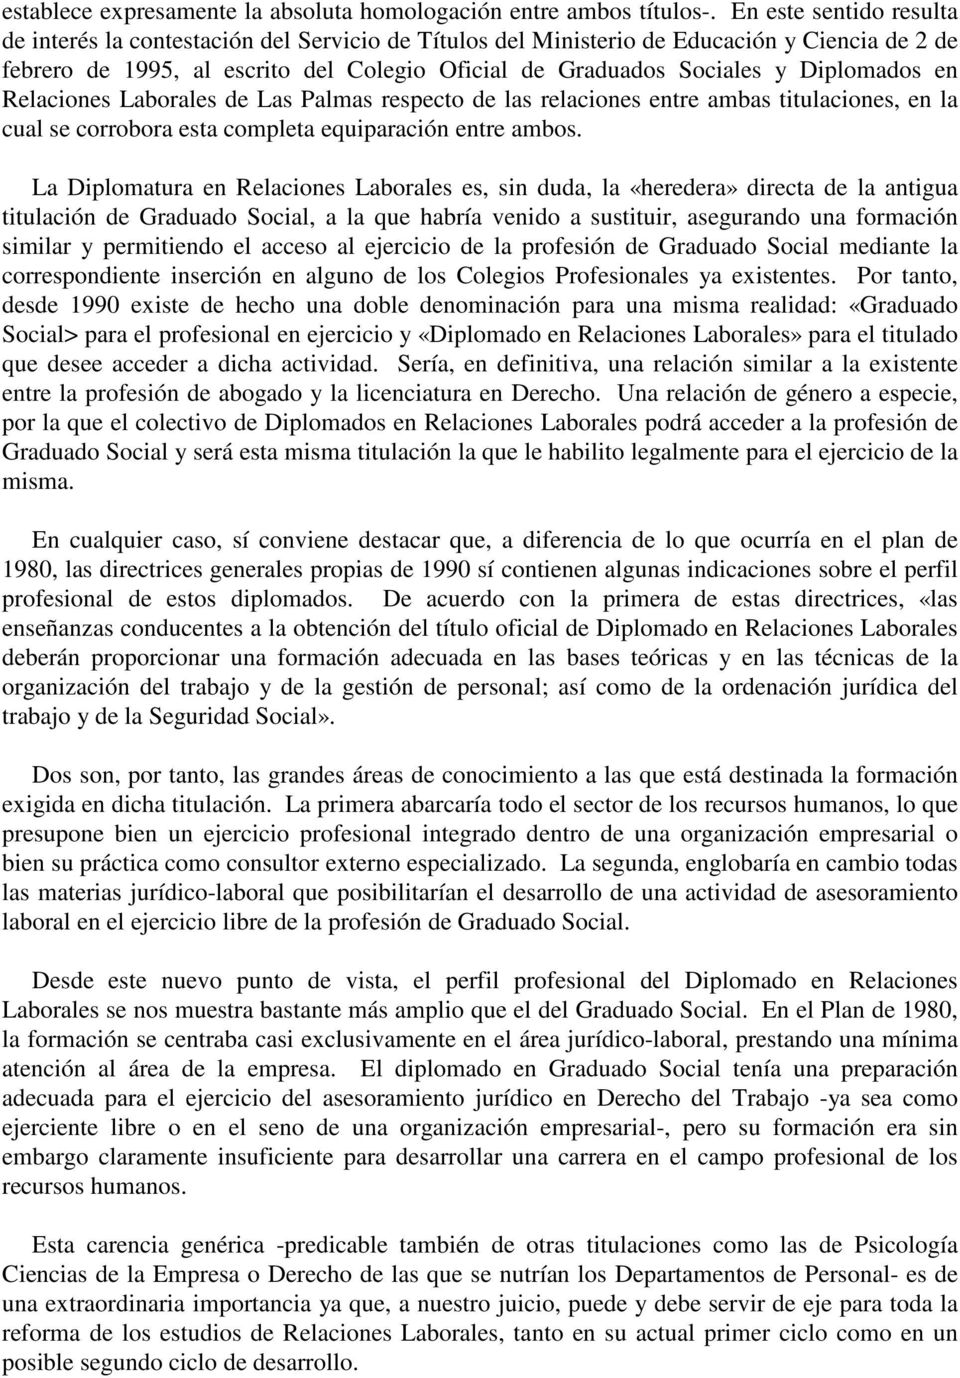 Diplomados en Relaciones Laborales de Las Palmas respecto de las relaciones entre ambas titulaciones, en la cual se corrobora esta completa equiparación entre ambos.